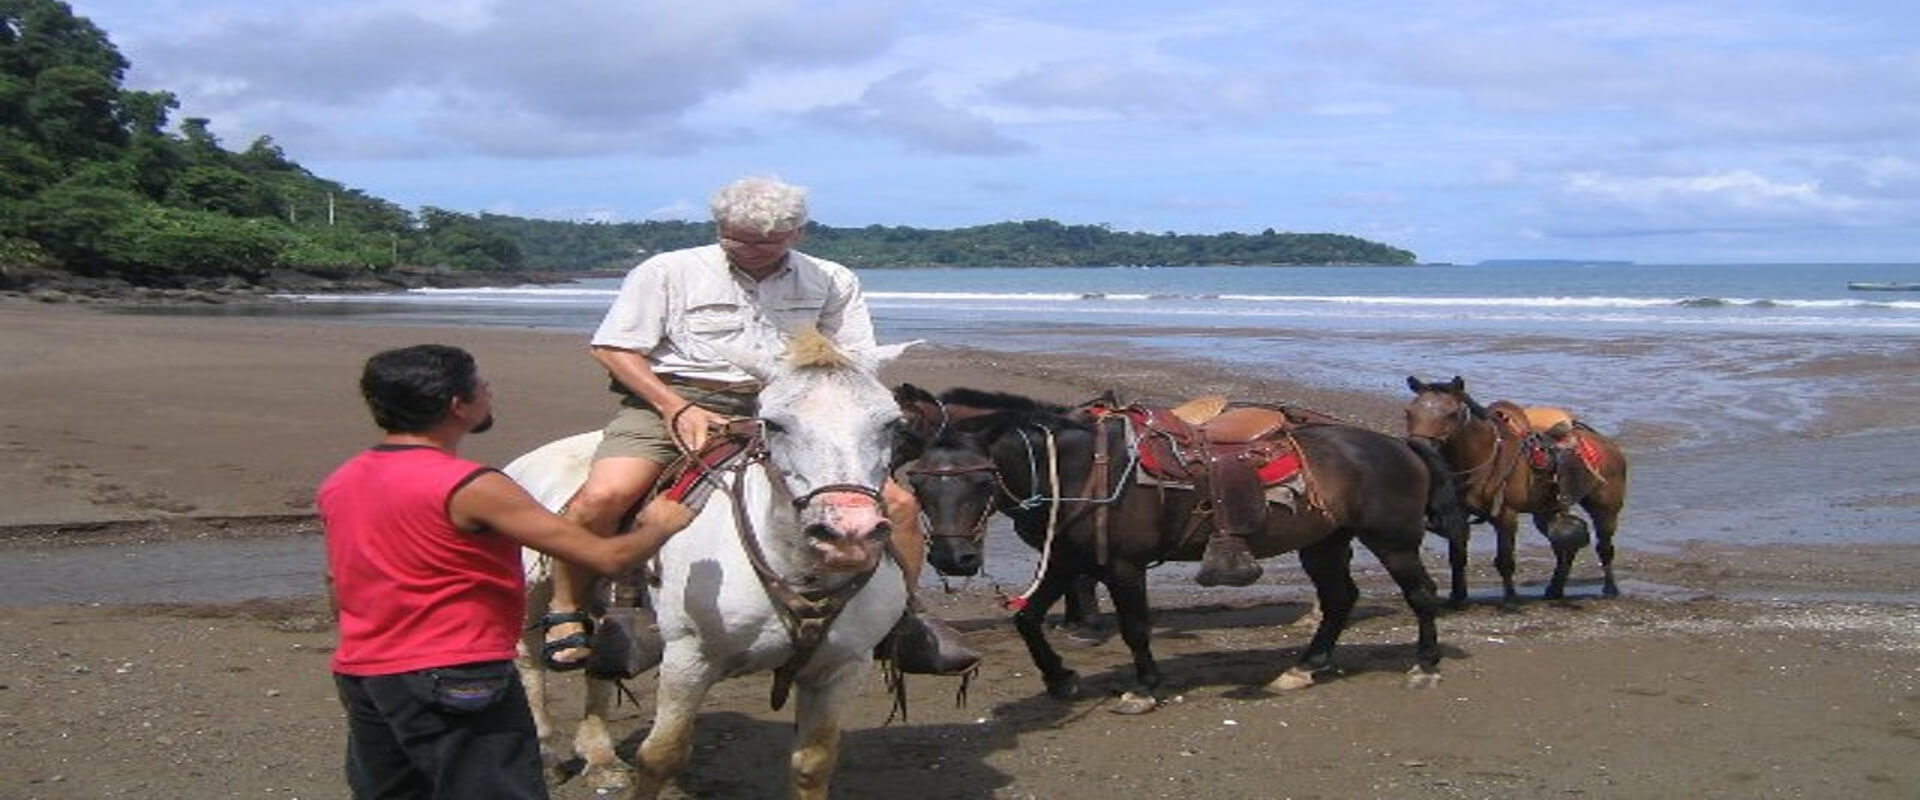 Drake Bay Horseback Riding Tour | Costa Rica Jade Tours